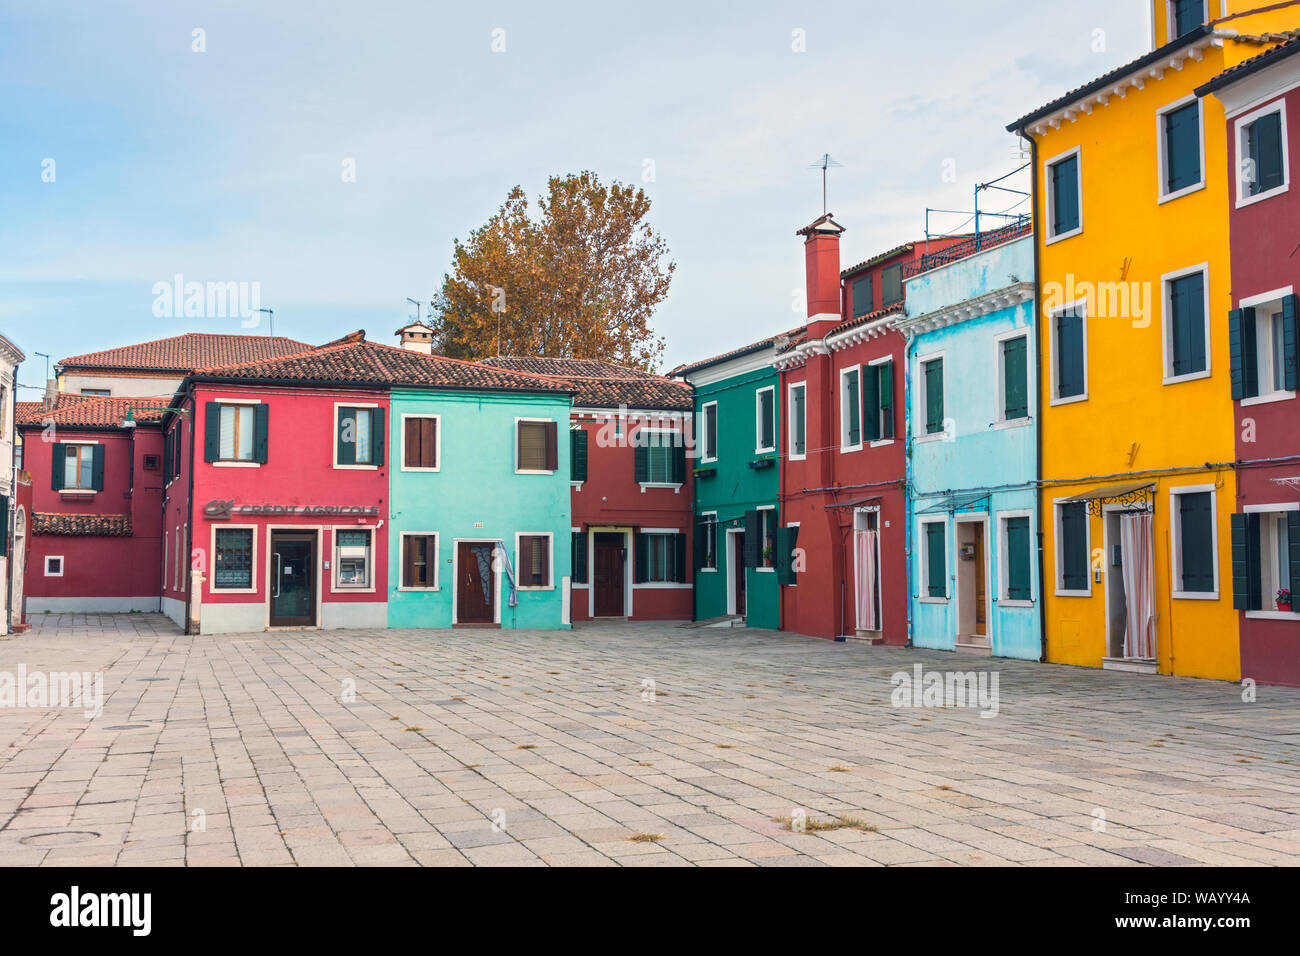 Brightly coloured buildings at the Piazza Baldassare Galuppi, Burano, Laguna Veneto, Italy Stock Photo